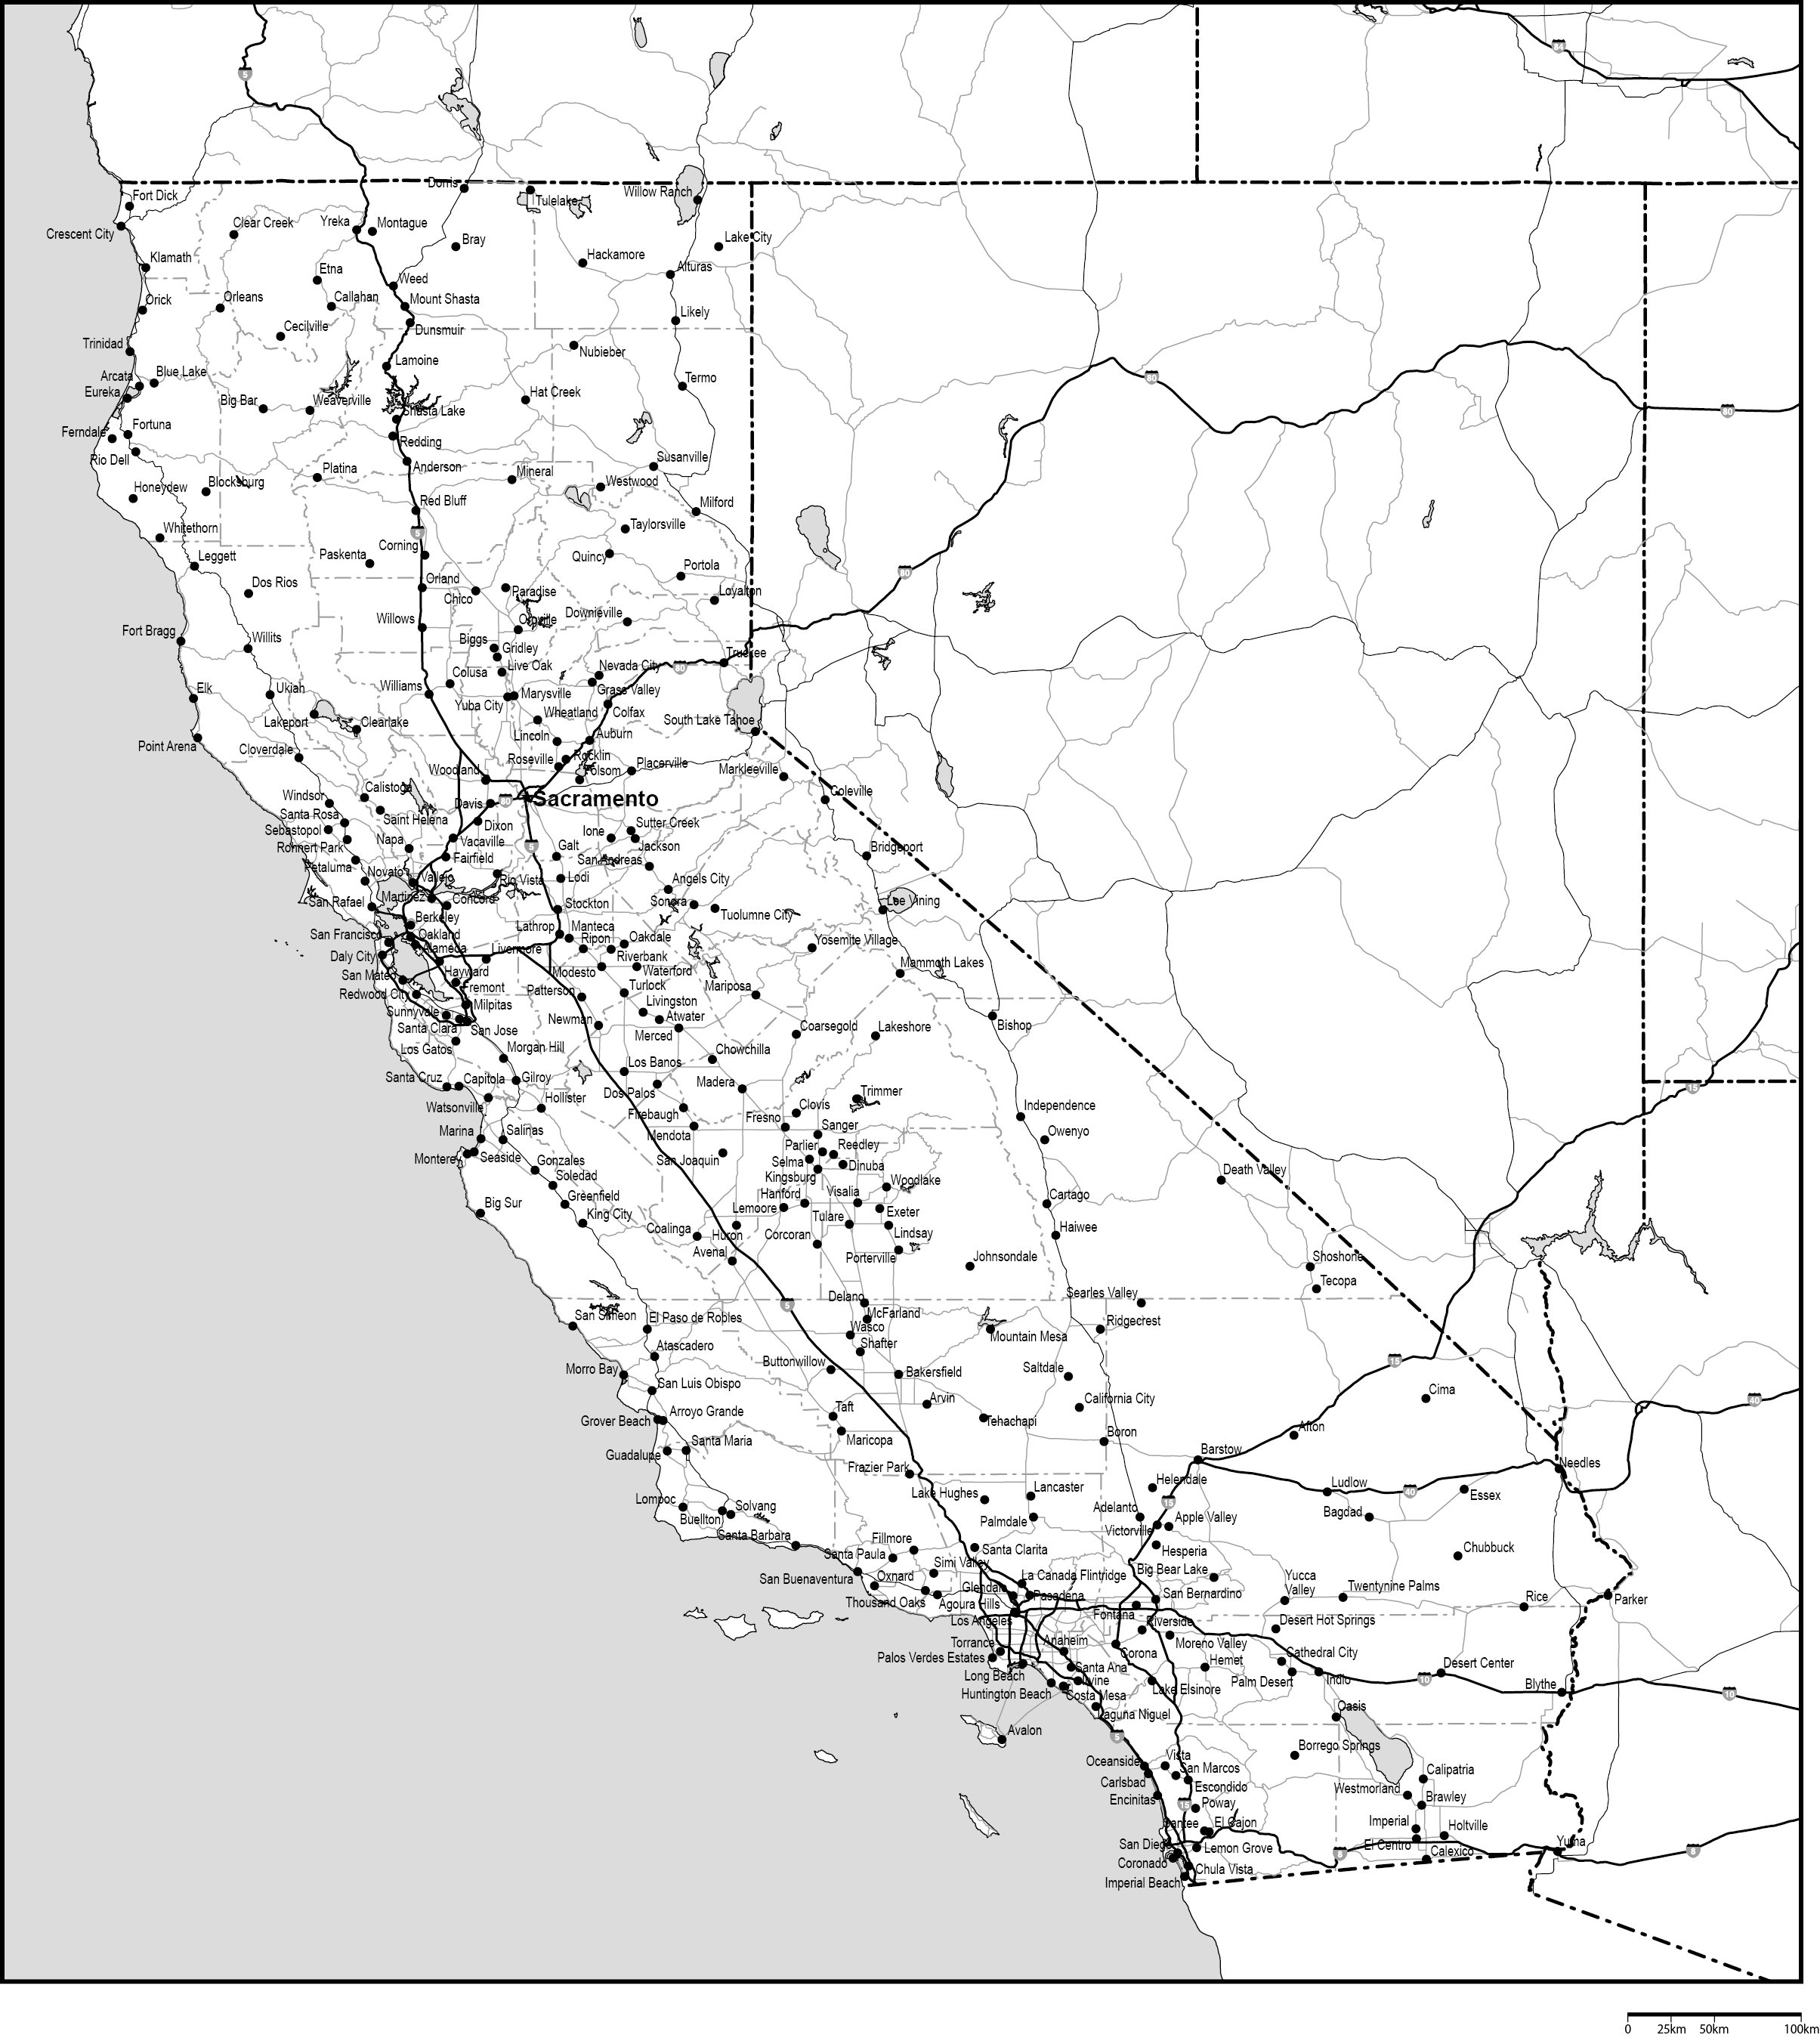 カリフォルニア州郡分け白地図州都・主な都市・道路あり(英語)フリーデータの画像